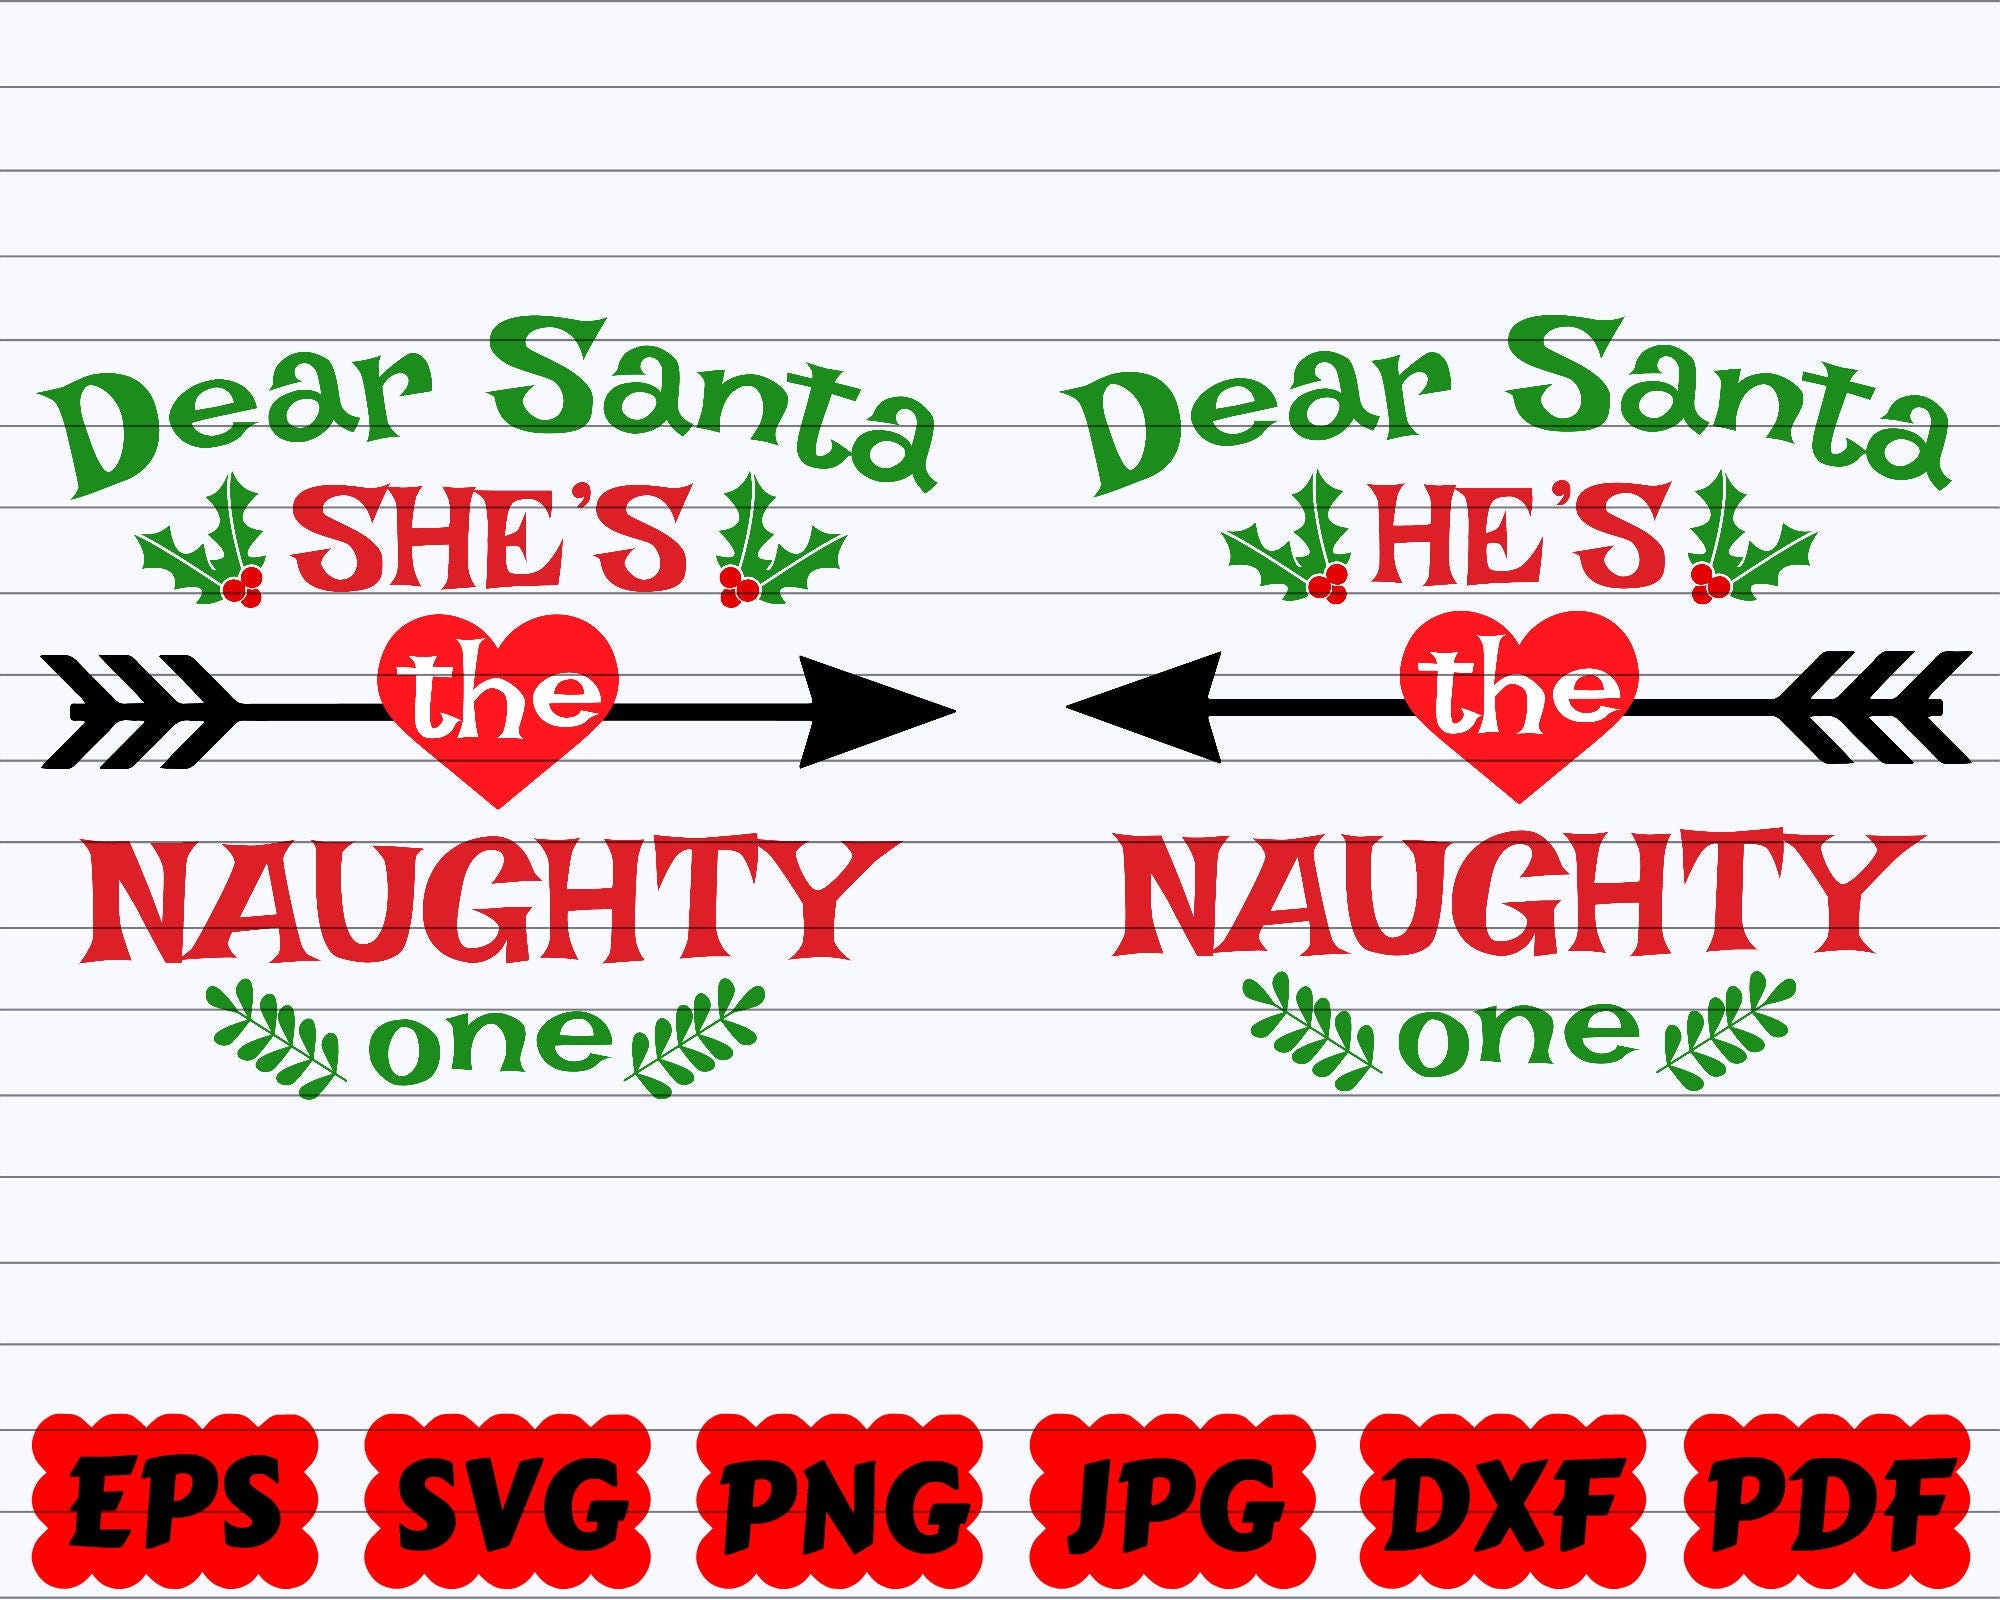 Dear Santa She